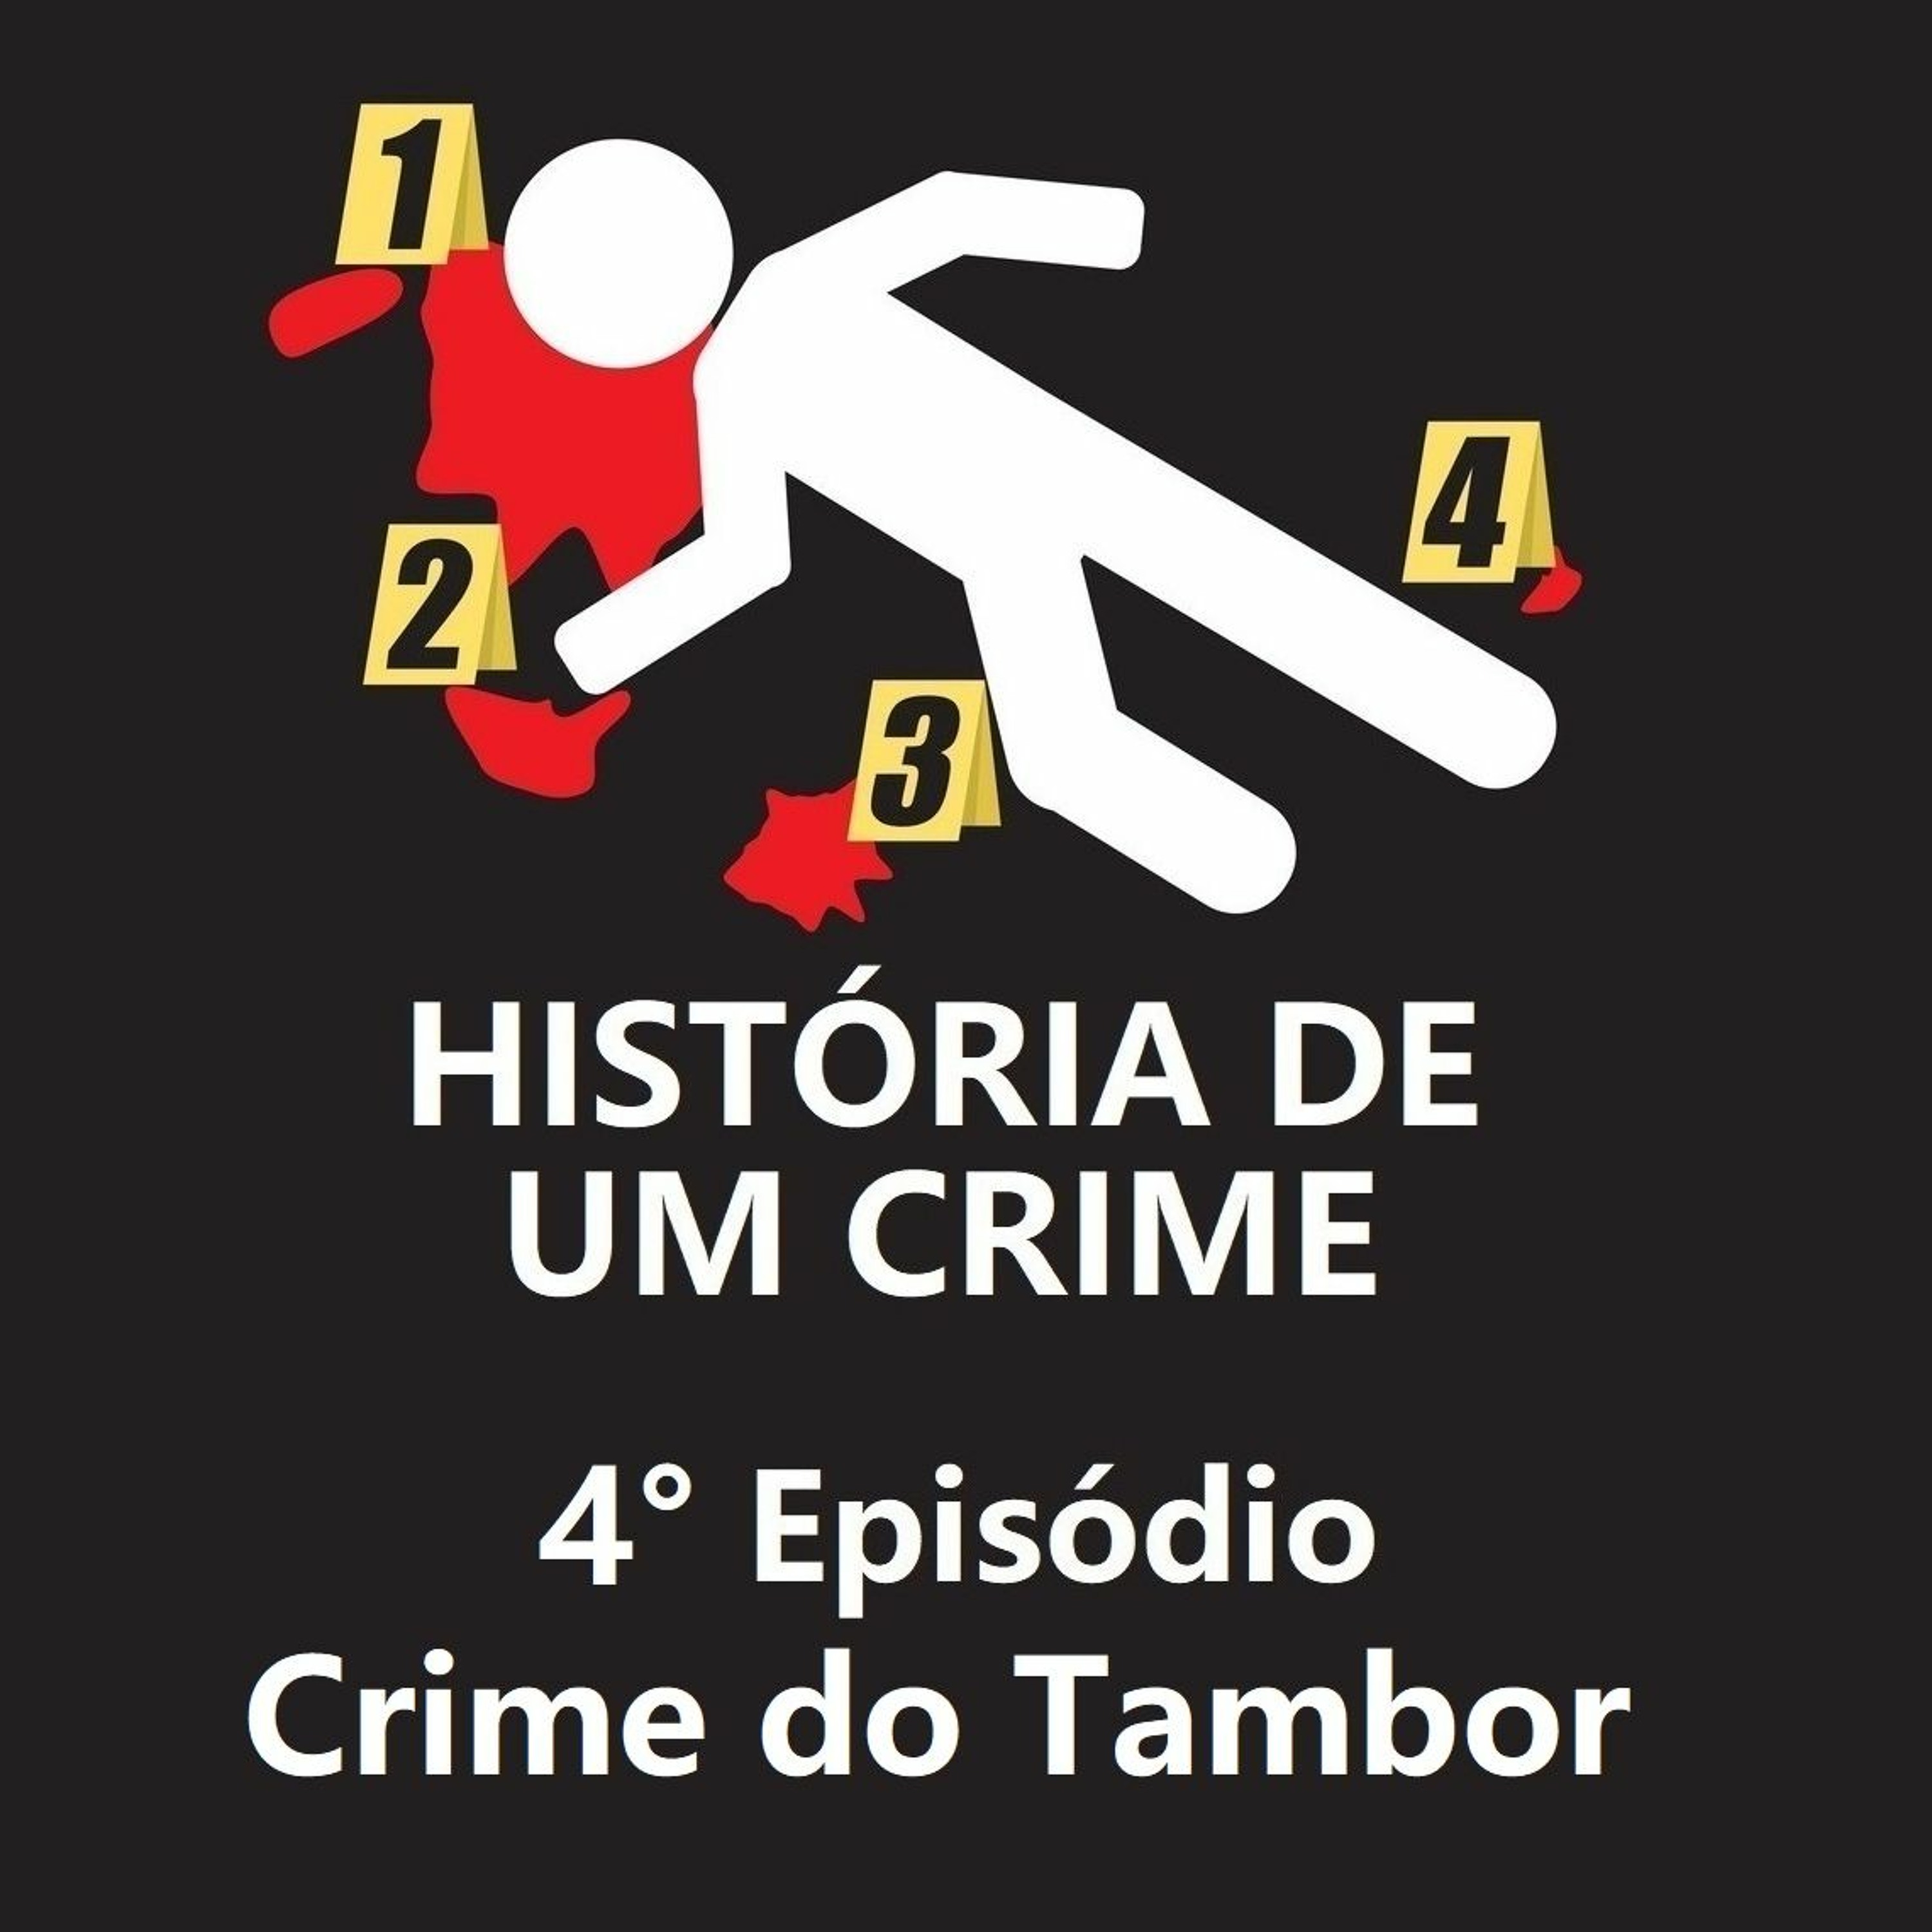 4° EPISÓDIO - Crime do Tambor